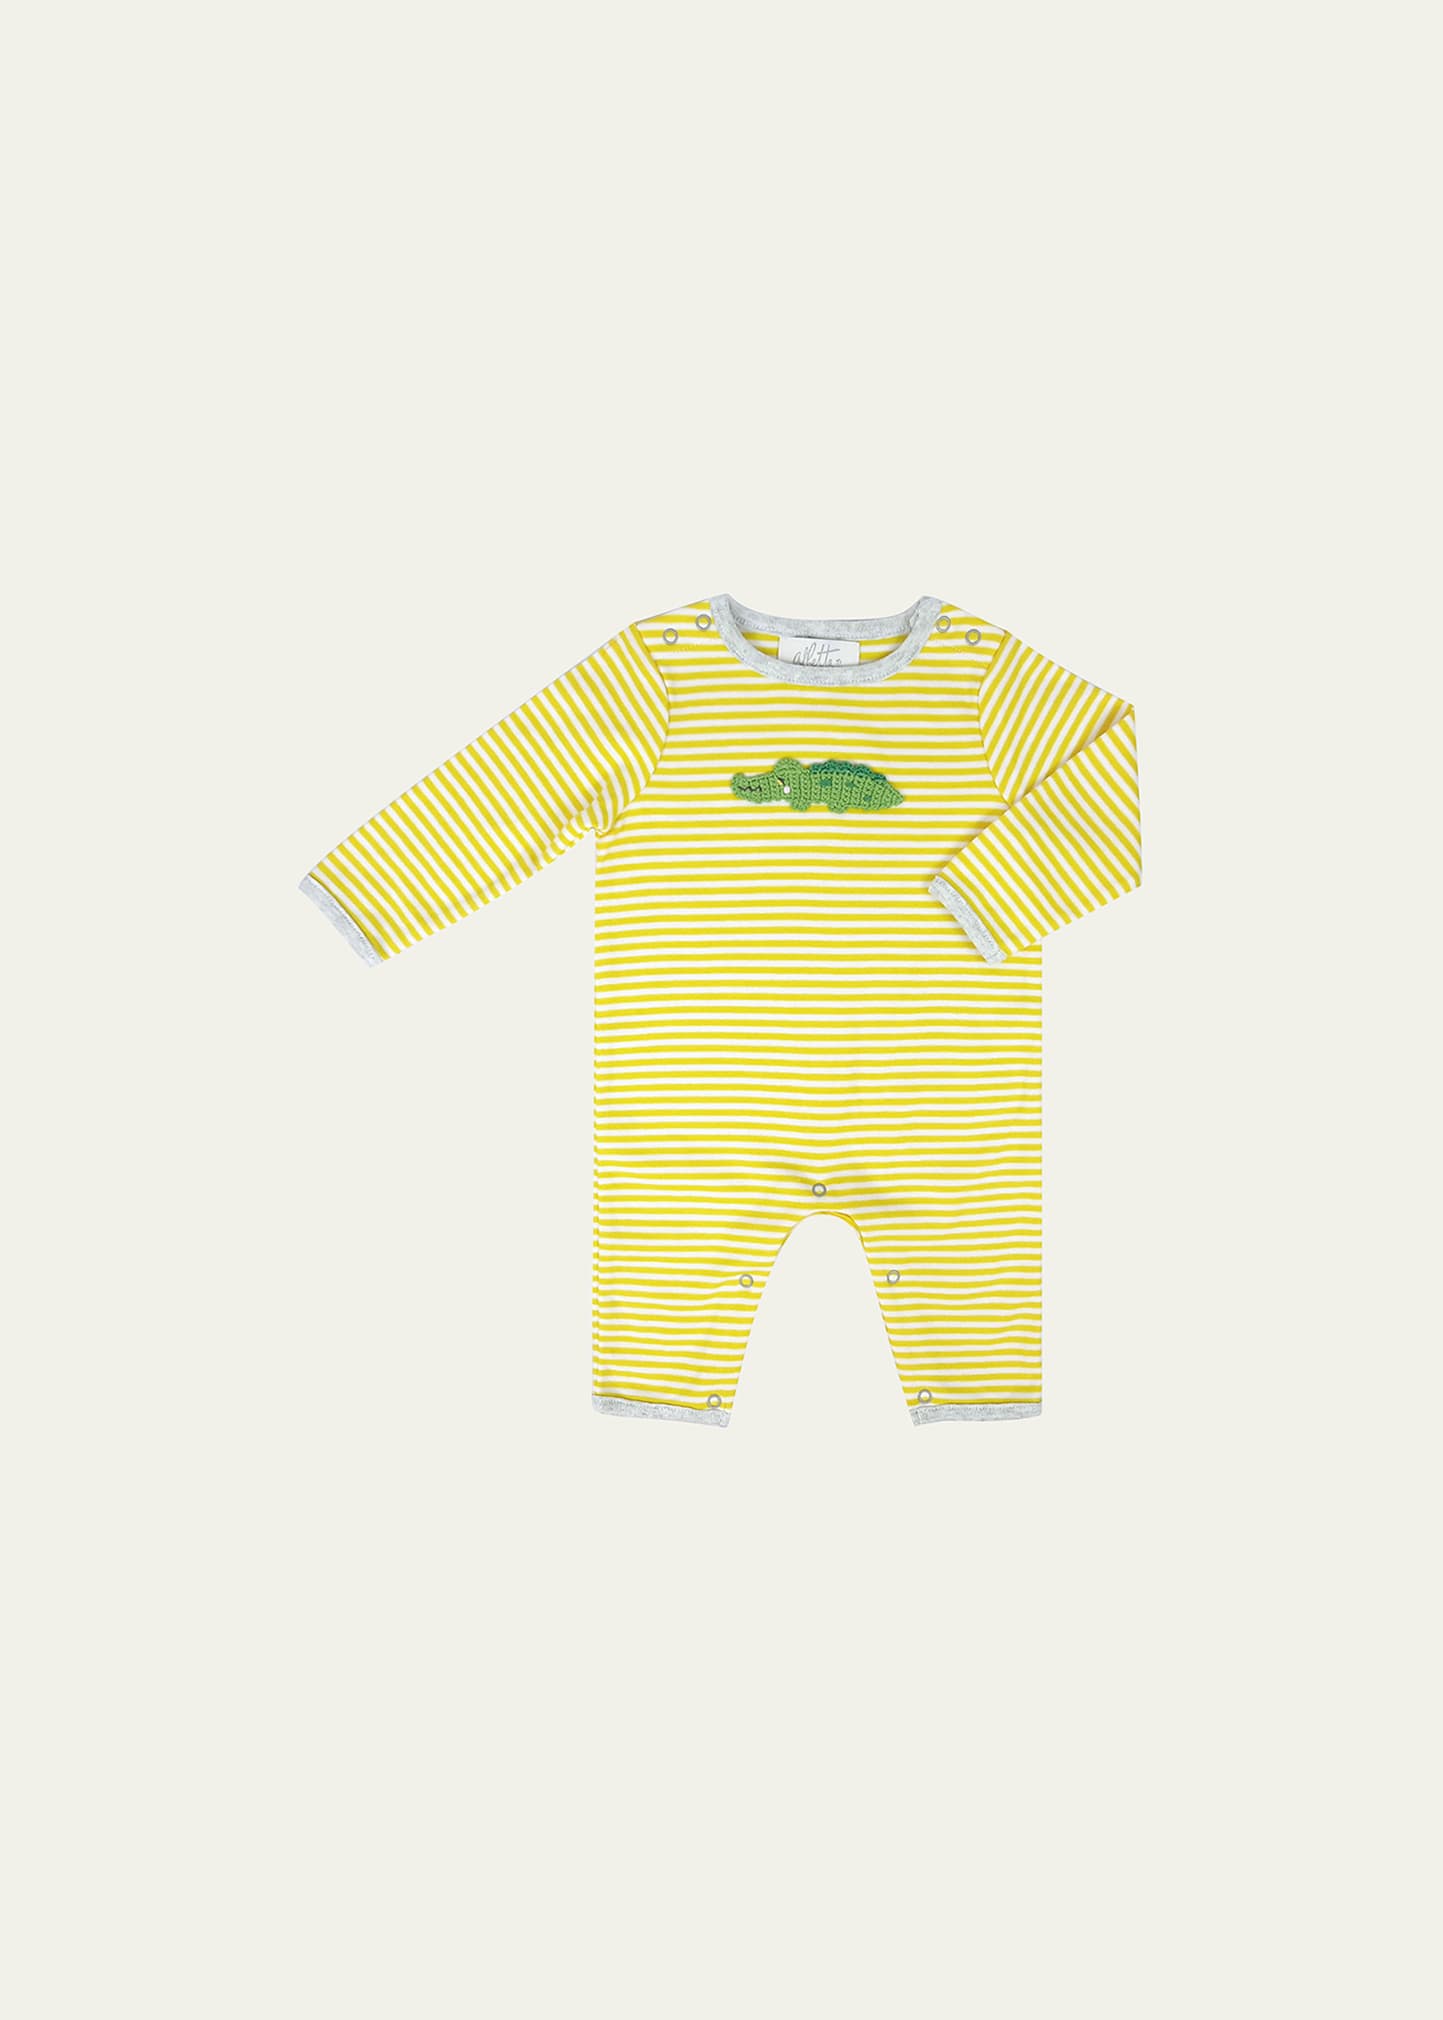 Albetta Kid's Striped Crocodile Applique Coverall In Yellow Stripe